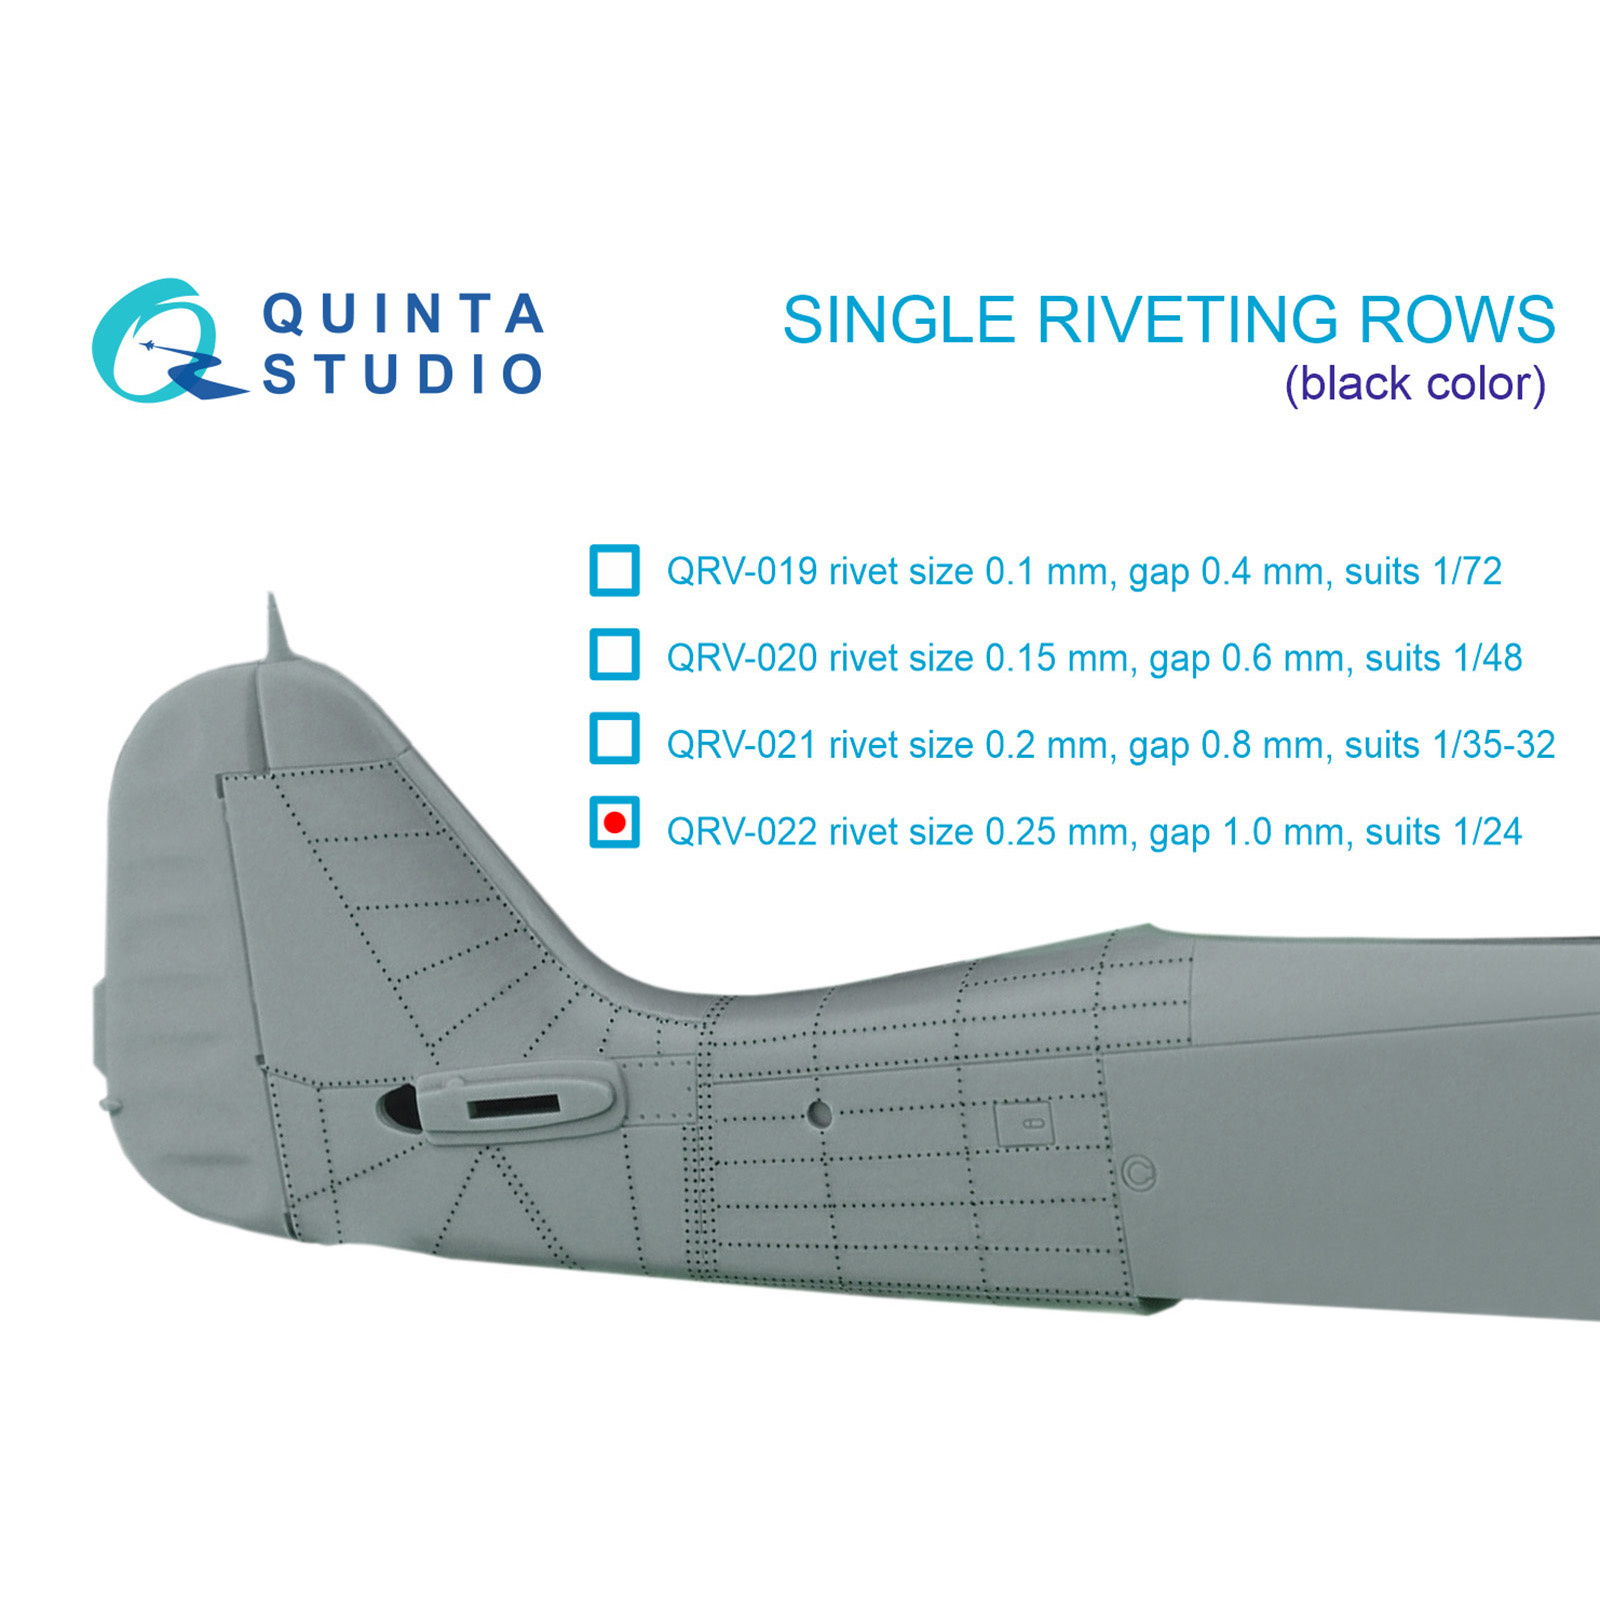 QRV-022 Quinta Studio 1/24 Одиночные клепочные ряды (размер клепки 0.25 mm, интервал 1.0 mm), черные, общая длина 5,8 m